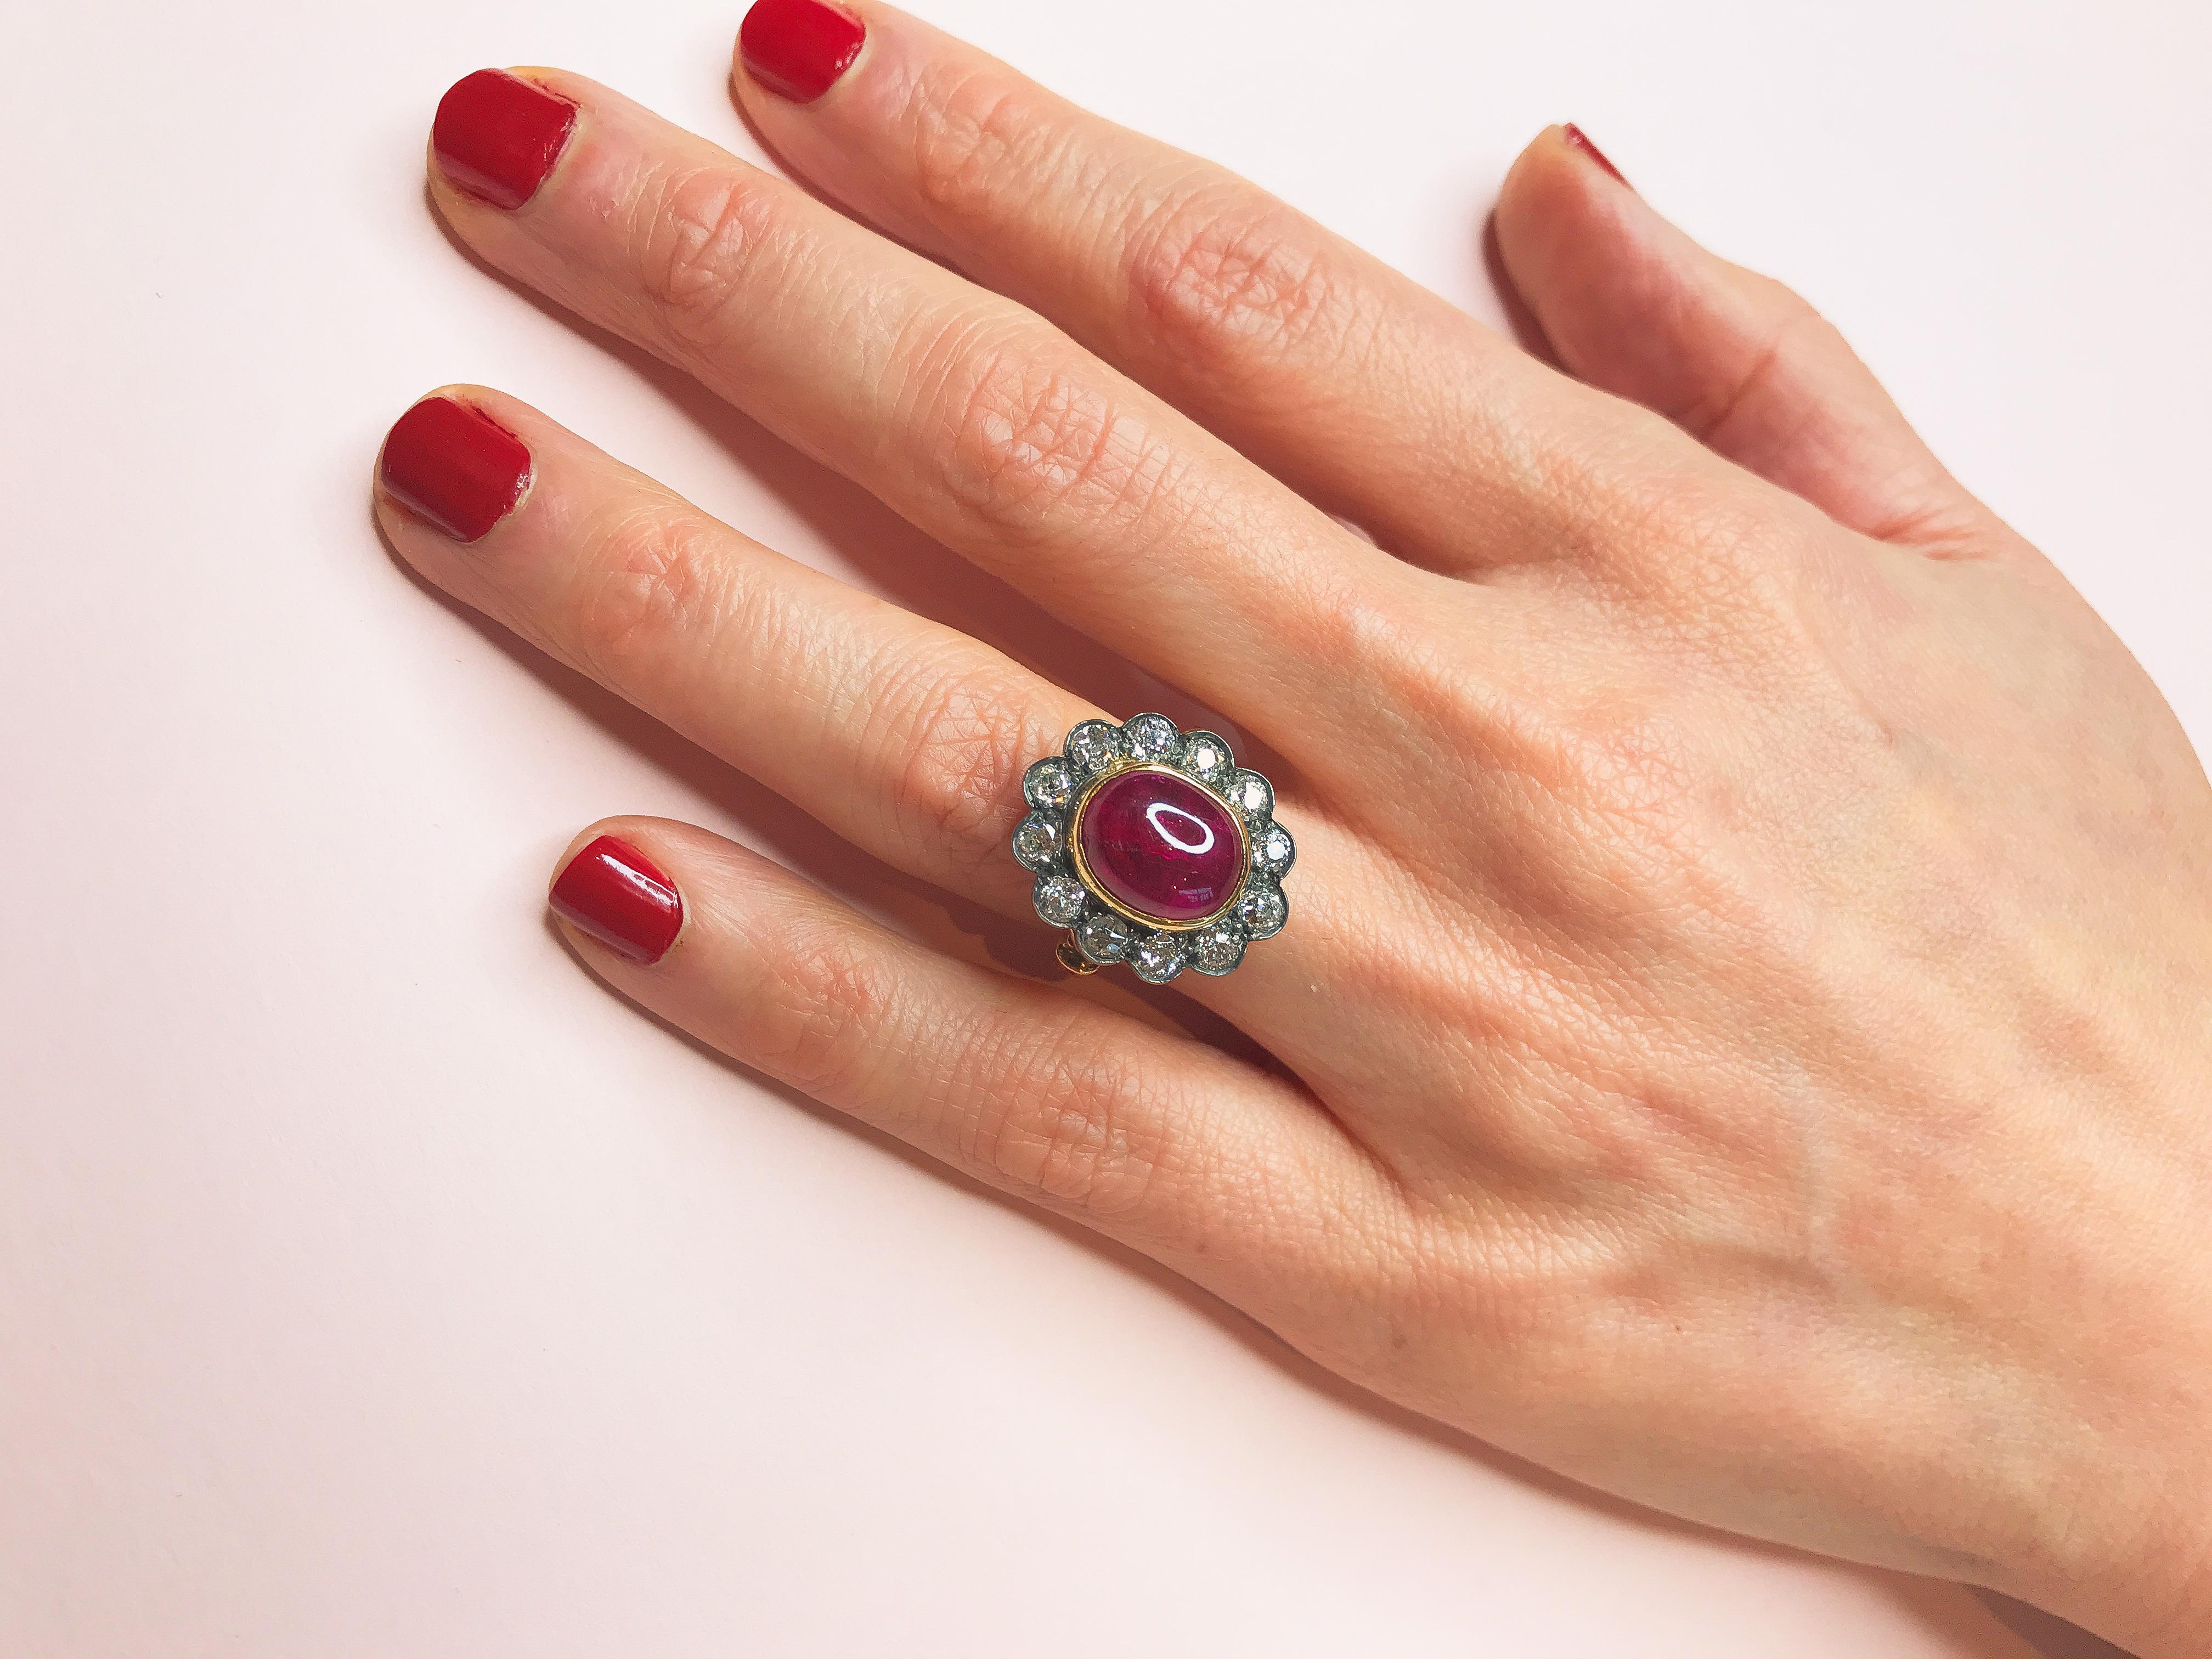 Der handverlesene Cabochon-Rubin in der Mitte dieses Rings im Vintage-Stil verschlägt Ihnen dank seiner Größe und seiner charmanten rosaroten Farbe den Atem. Der Halo, der ihn umgibt, besteht aus runden weißen Brillanten, die in reichhaltiges